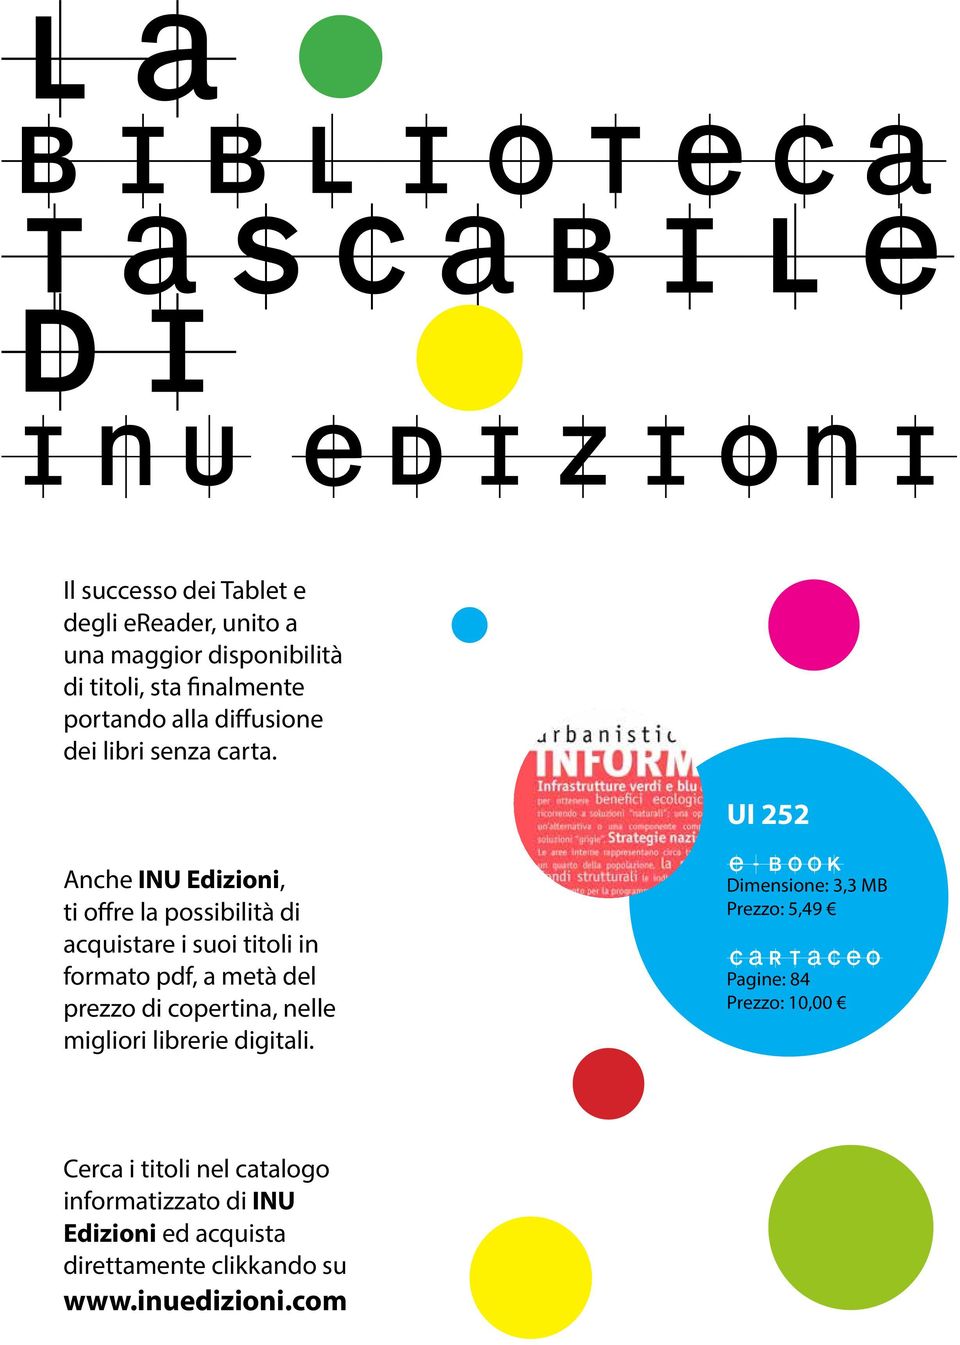 UI 252 Anche INU Edizioni, ti offre la possibilità di acquistare i suoi titoli in formato pdf, a metà del prezzo di copertina, nelle